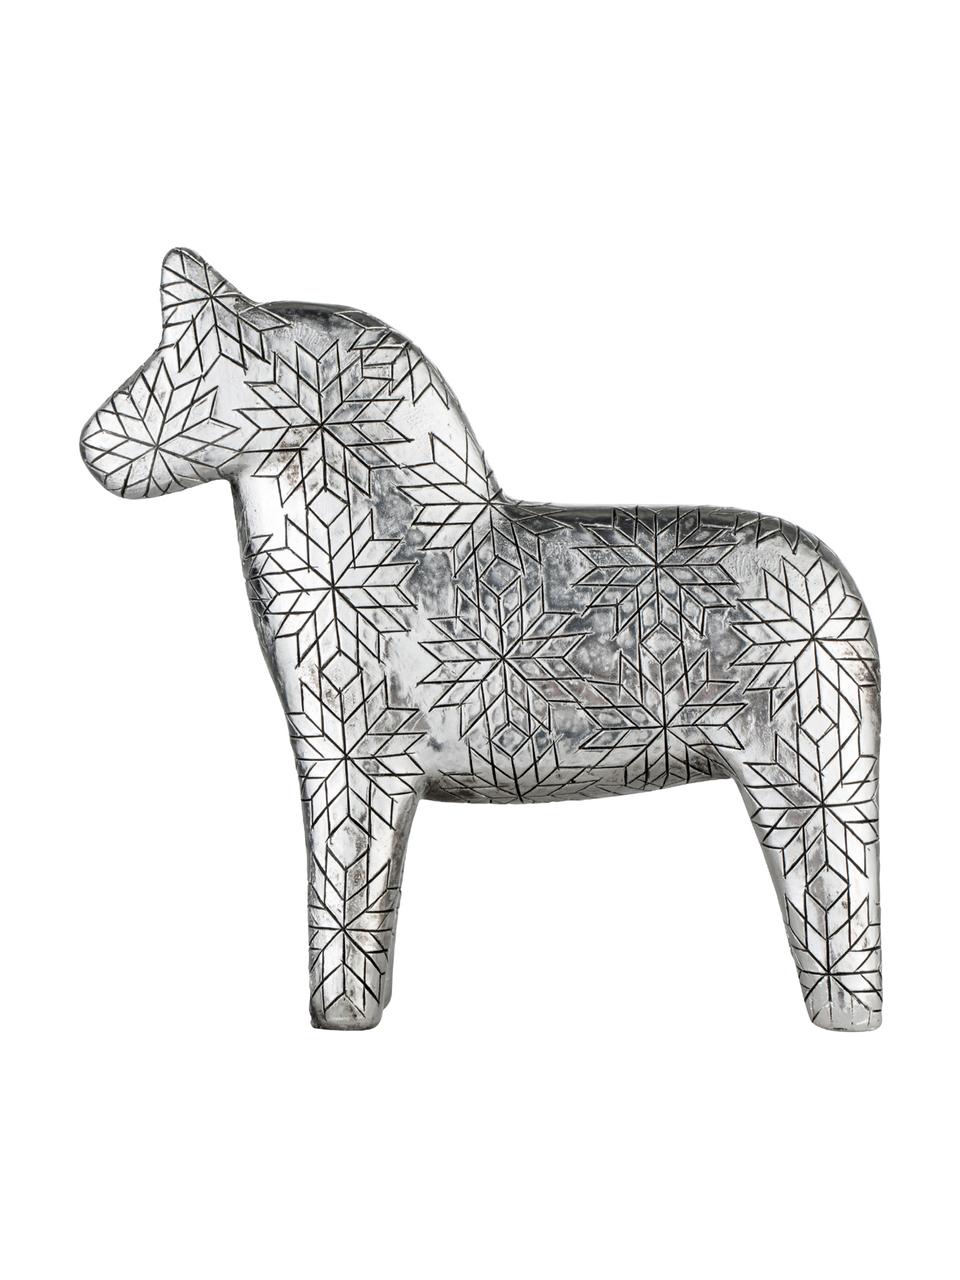 Accessoire décoratif Serafina Horse, Couleur argentée